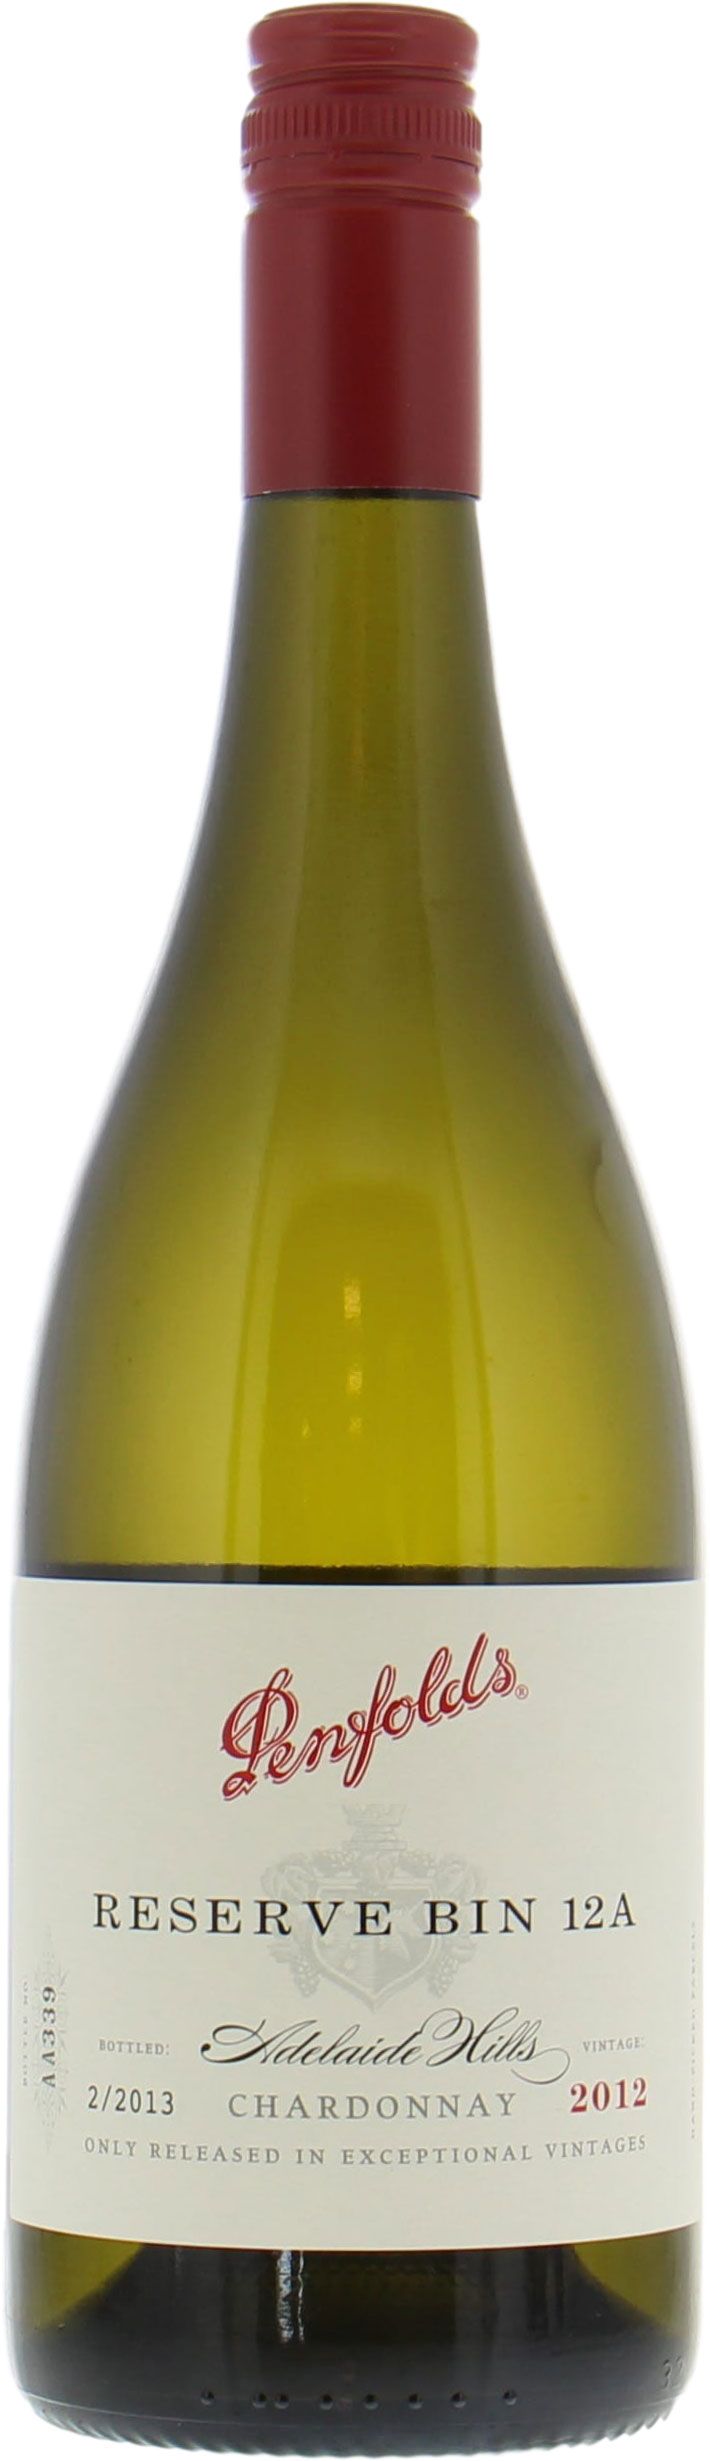 Penfolds - Reserve Bin Chardonnay 2012